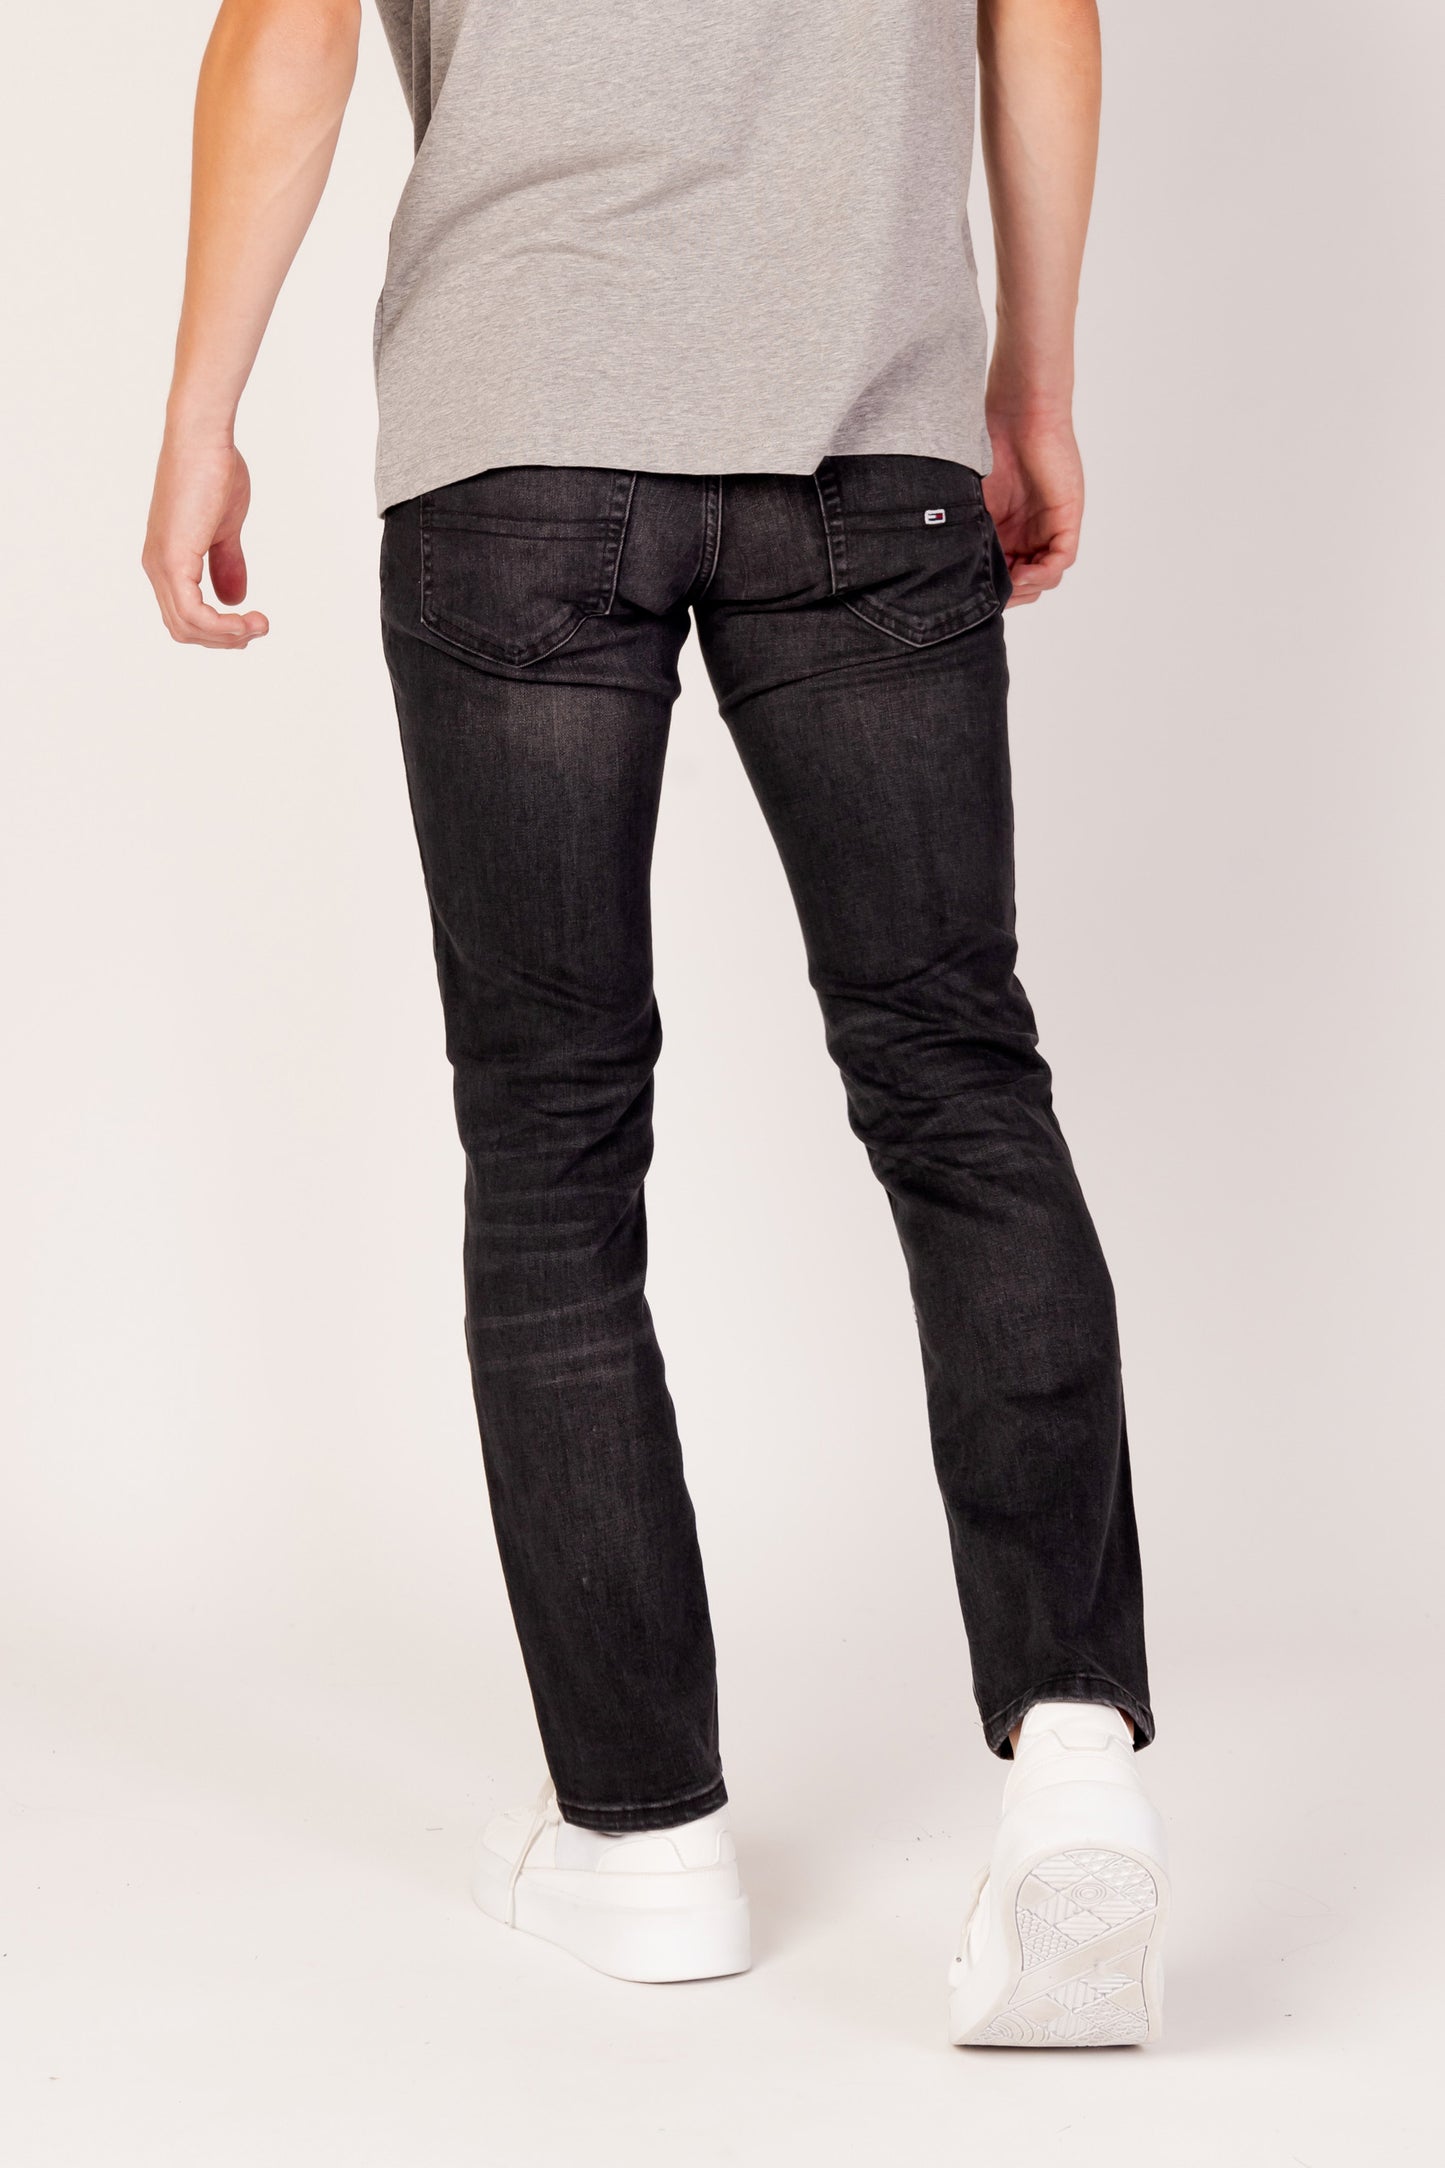 Marchio: Tommy Hilfiger Jeans - Genere: Uomo - Tipologia: Jeans - Stagione: AutuColore: nero, Taglia: W33_L32